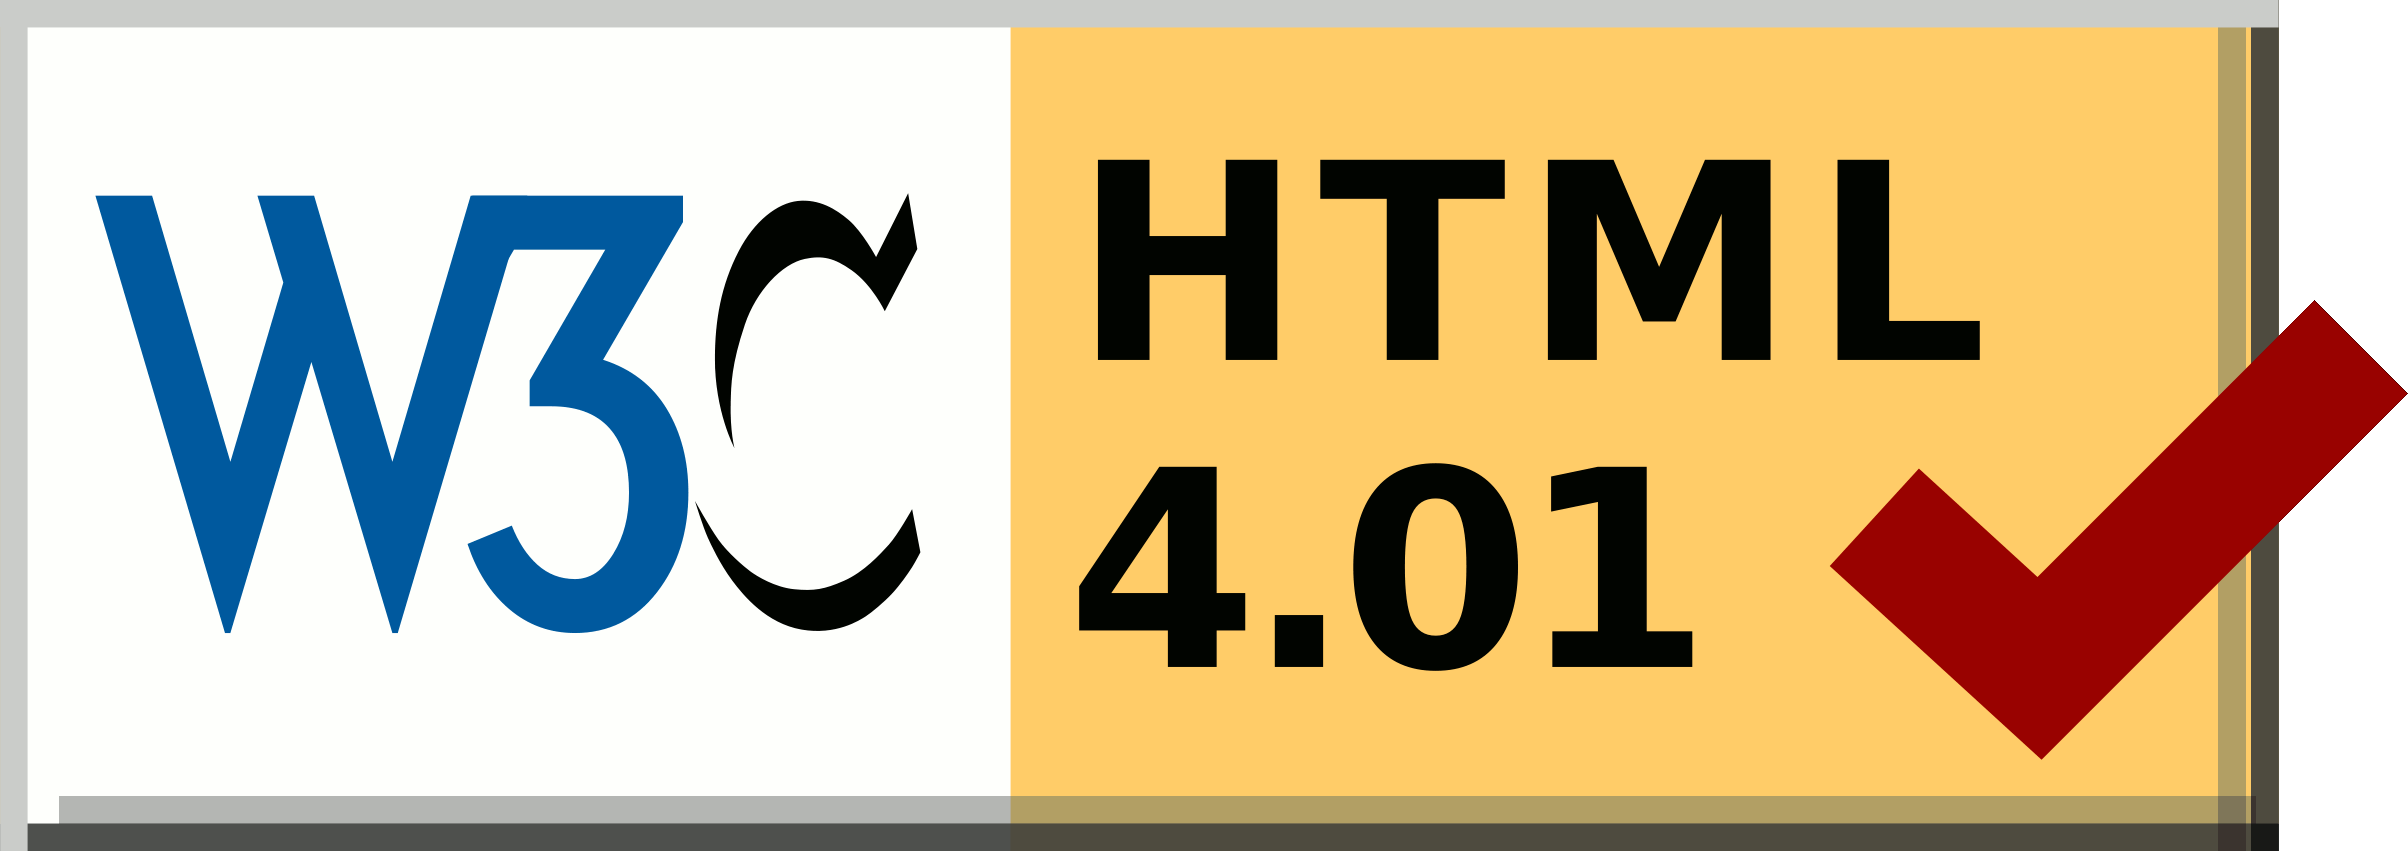 W3c HTML